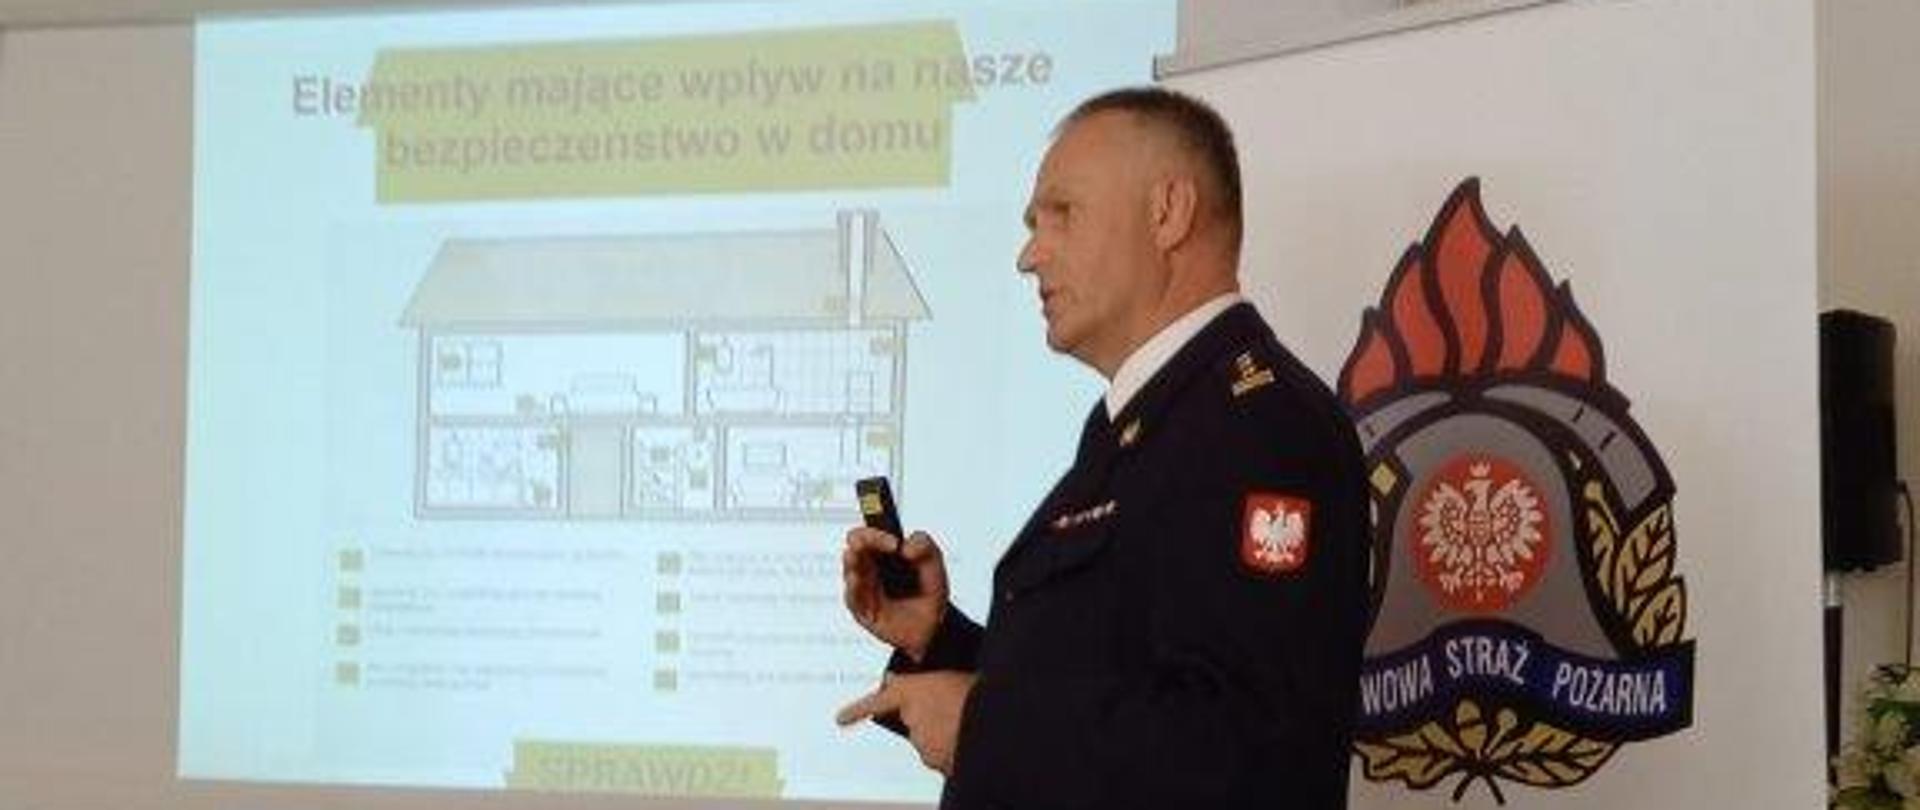 Na zdjęciu widoczny jest zastępca komendanta powiatowego jako prelegent kampanii Nowy sezon grzewczy w pomieszczeniu Urzędu Miasta Krosno Odrzańskie.